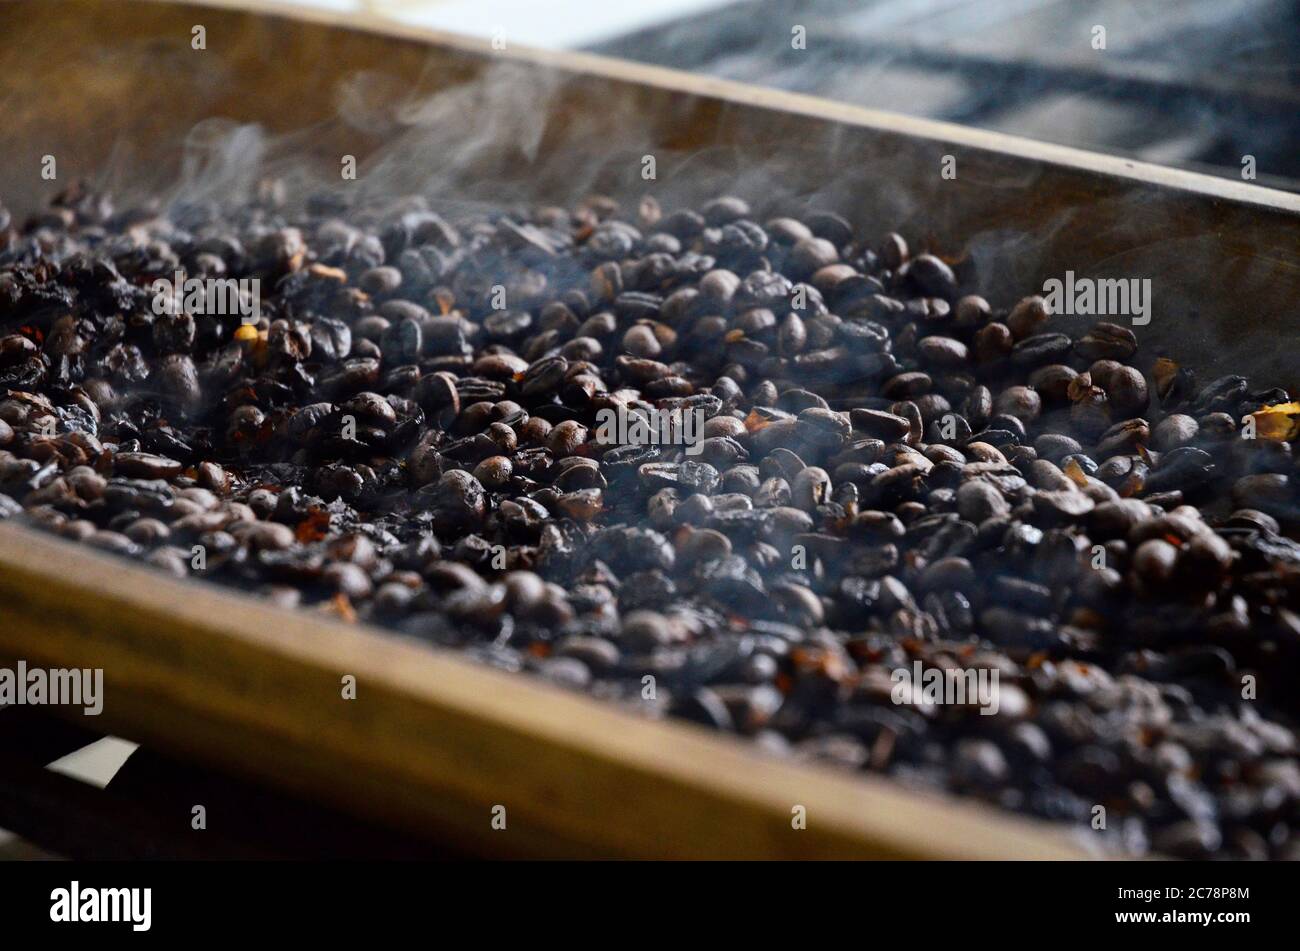 Les grains de café fraîchement torréfié - Salento, Colombie Banque D'Images